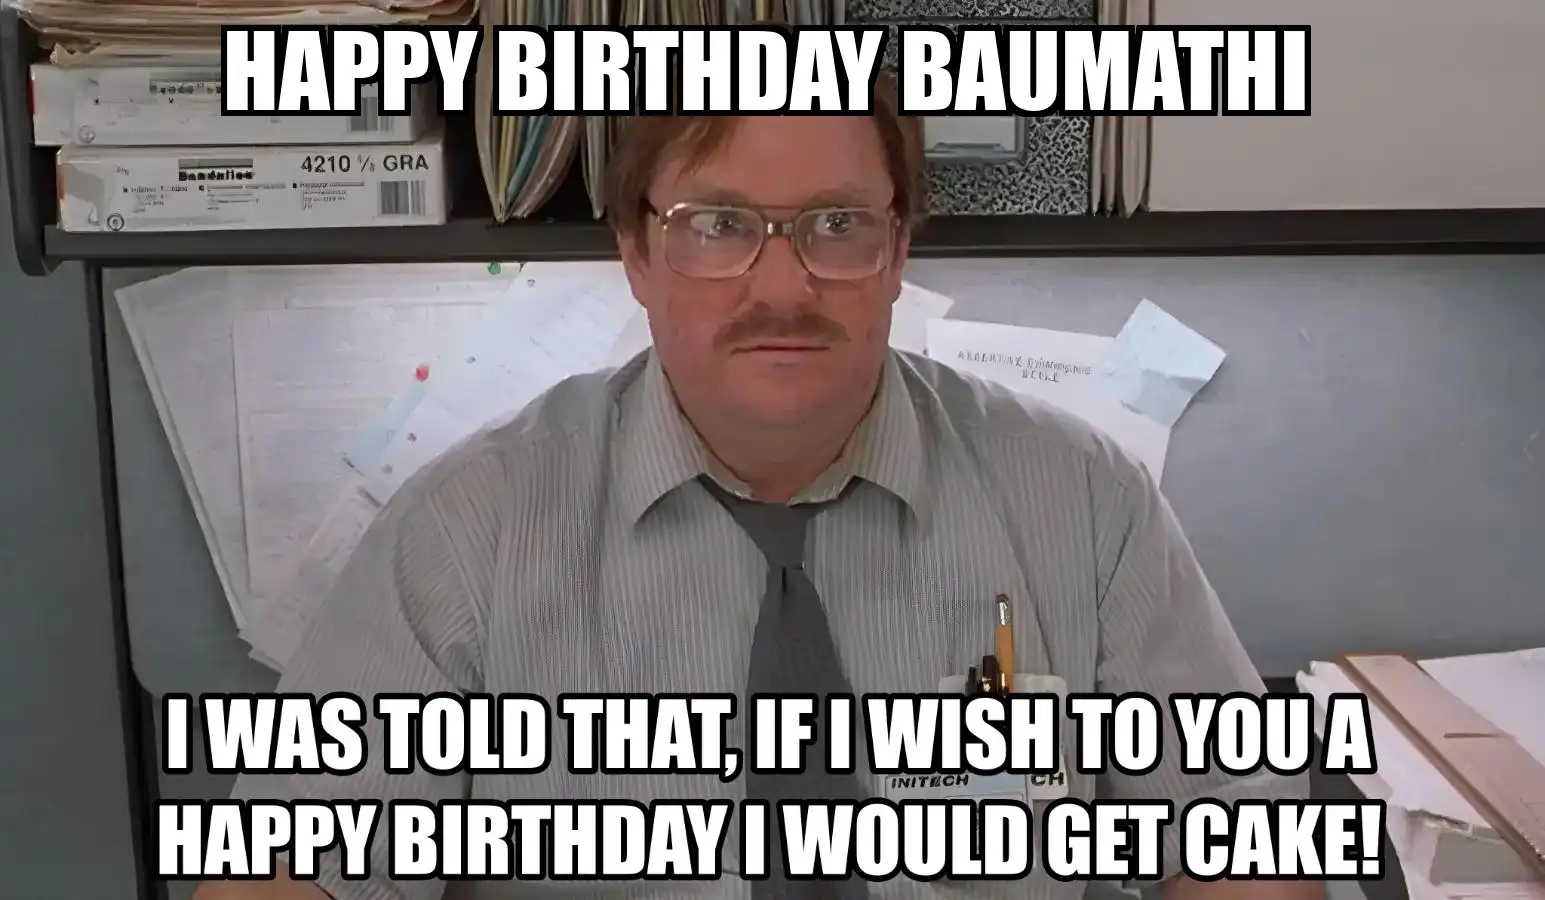 Happy Birthday Baumathi I Would Get A Cake Meme